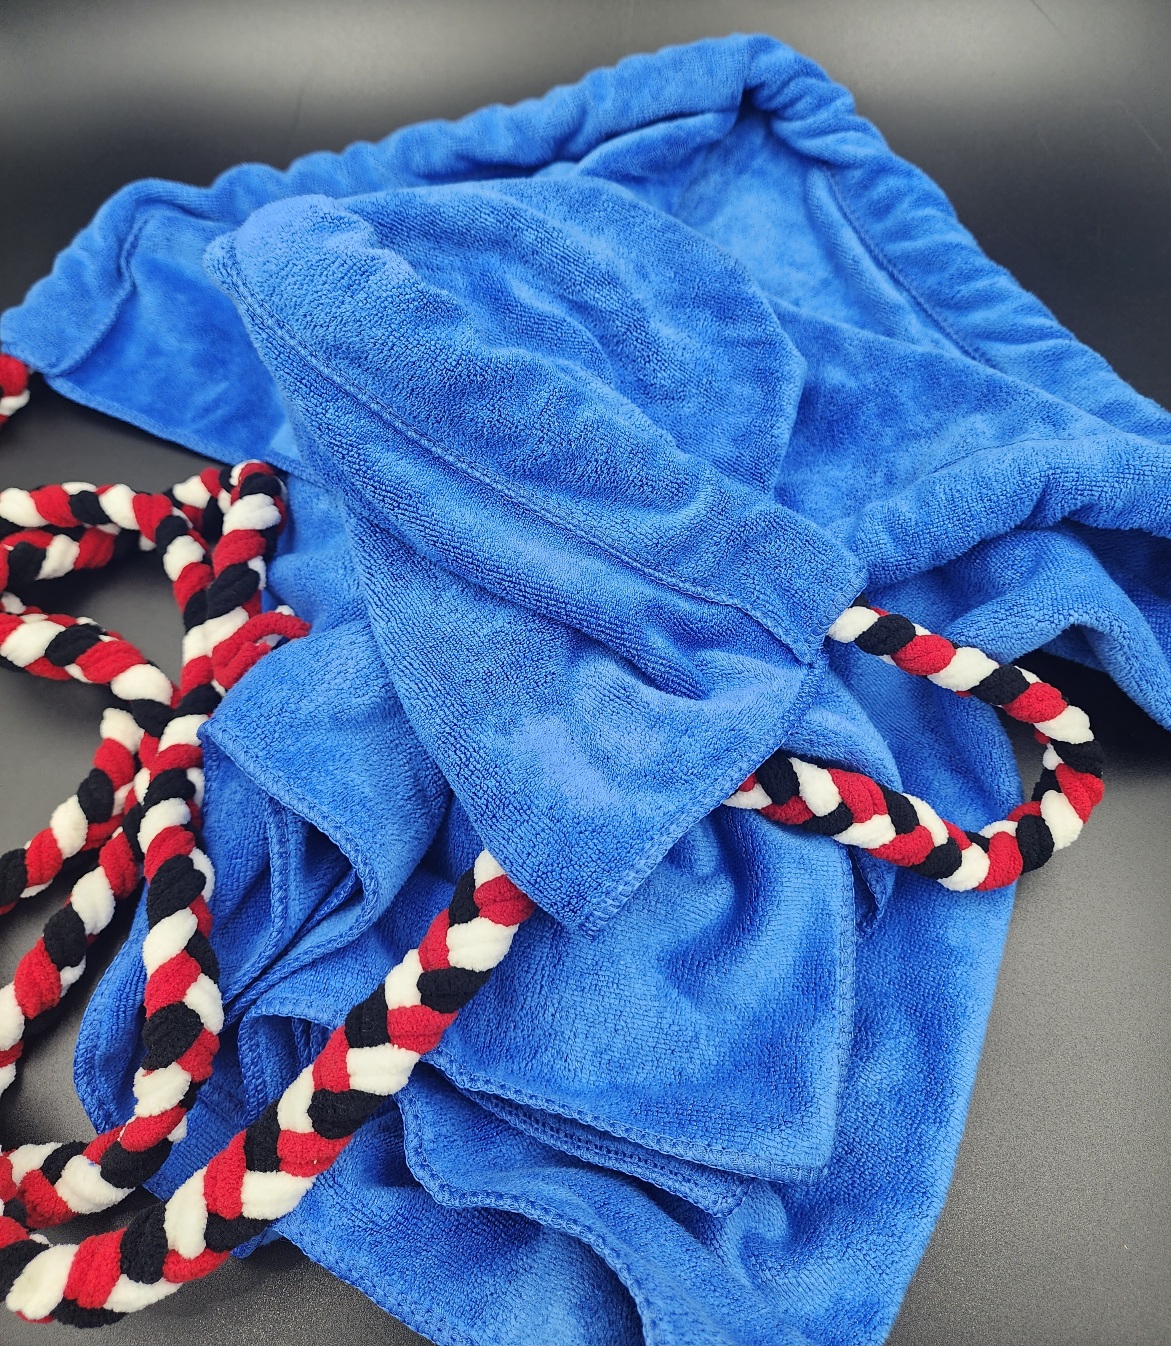 Dash towel with soak rope